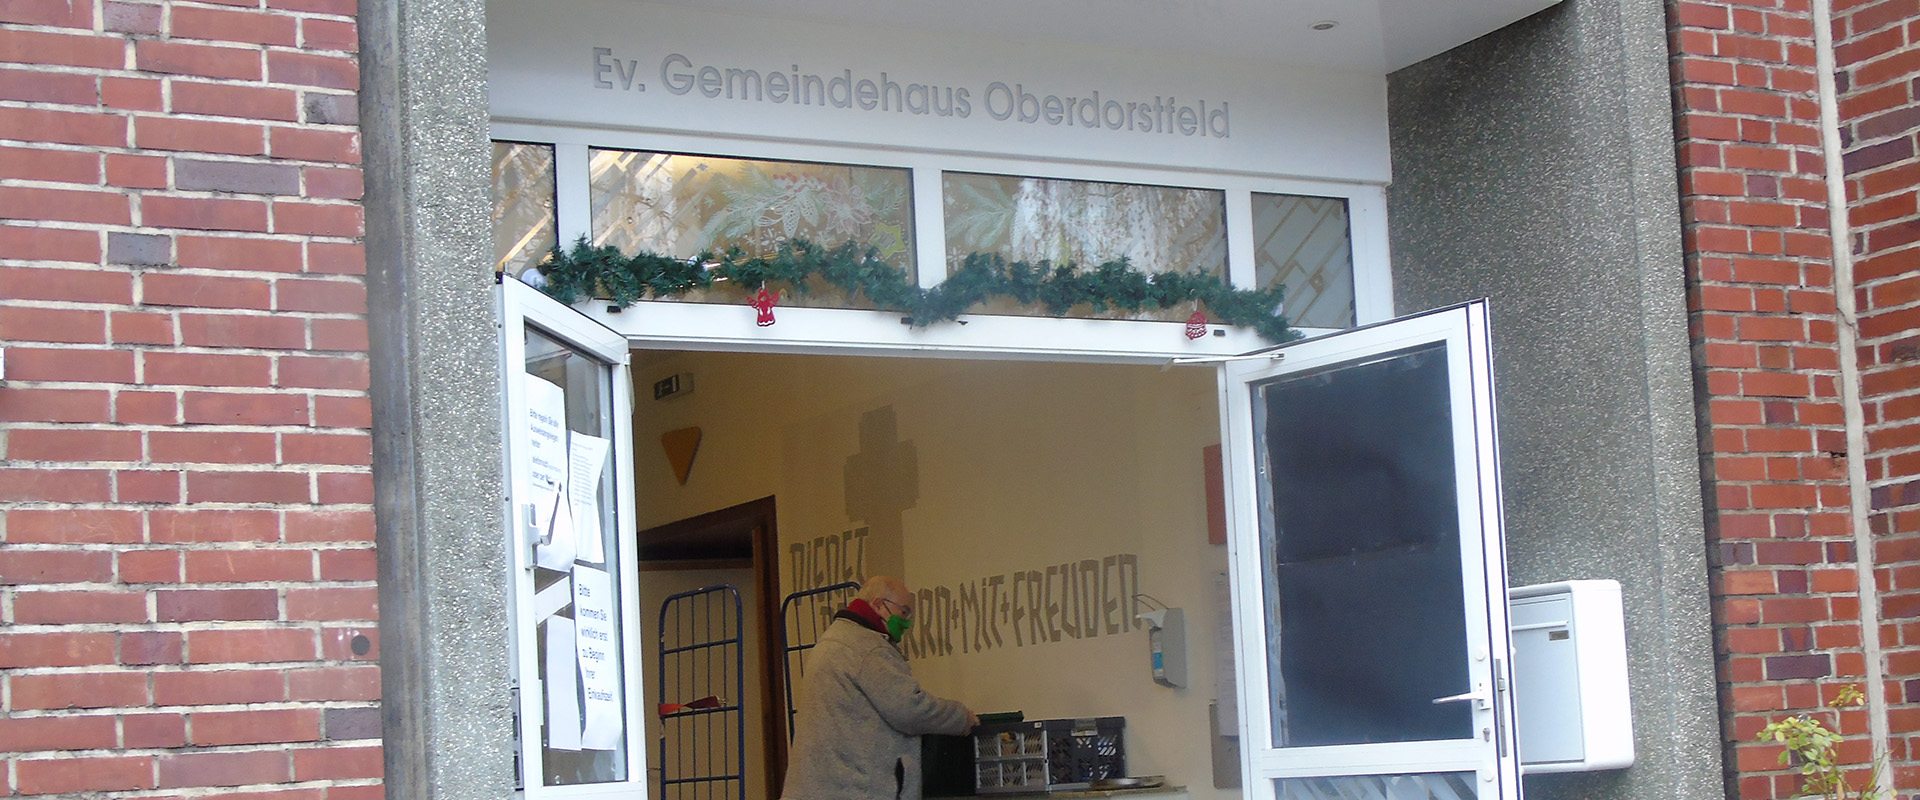 6 Kisten mit Nikolaus-Leckereien für die Kirchengemeinde Ober-Dorstfeld